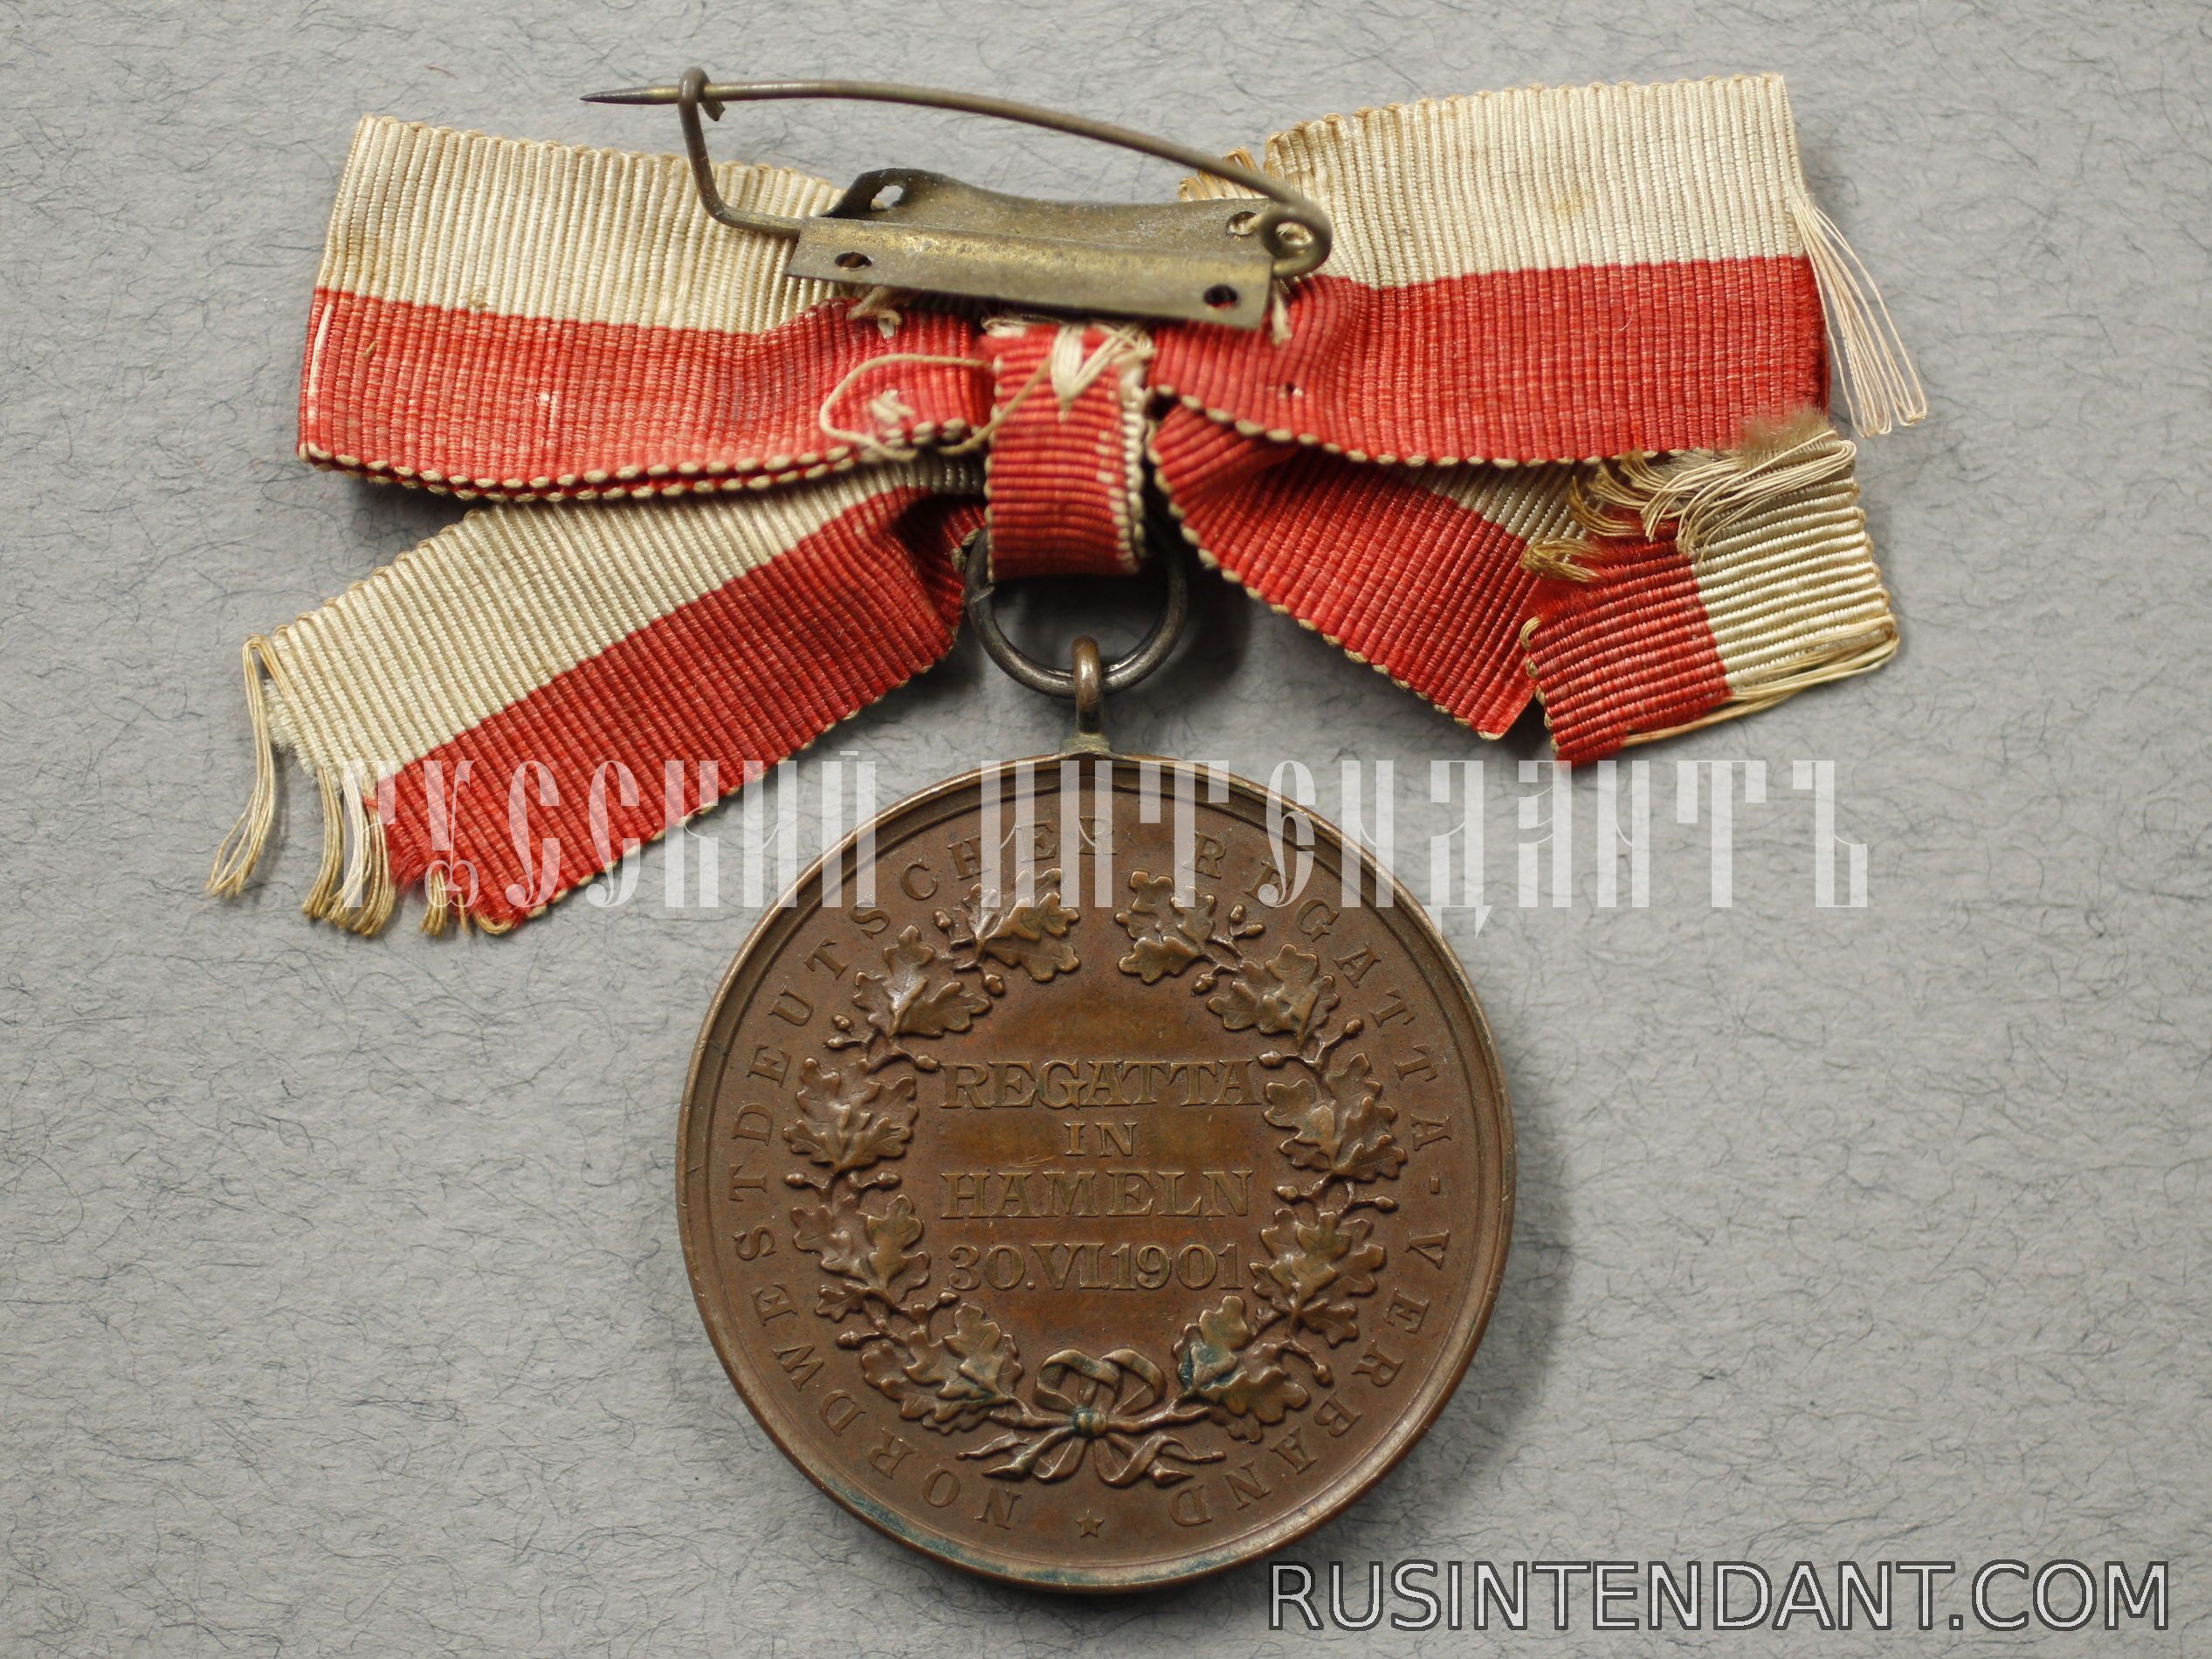 Фото 2: Бронзовая медаль Хамельнской регаты 